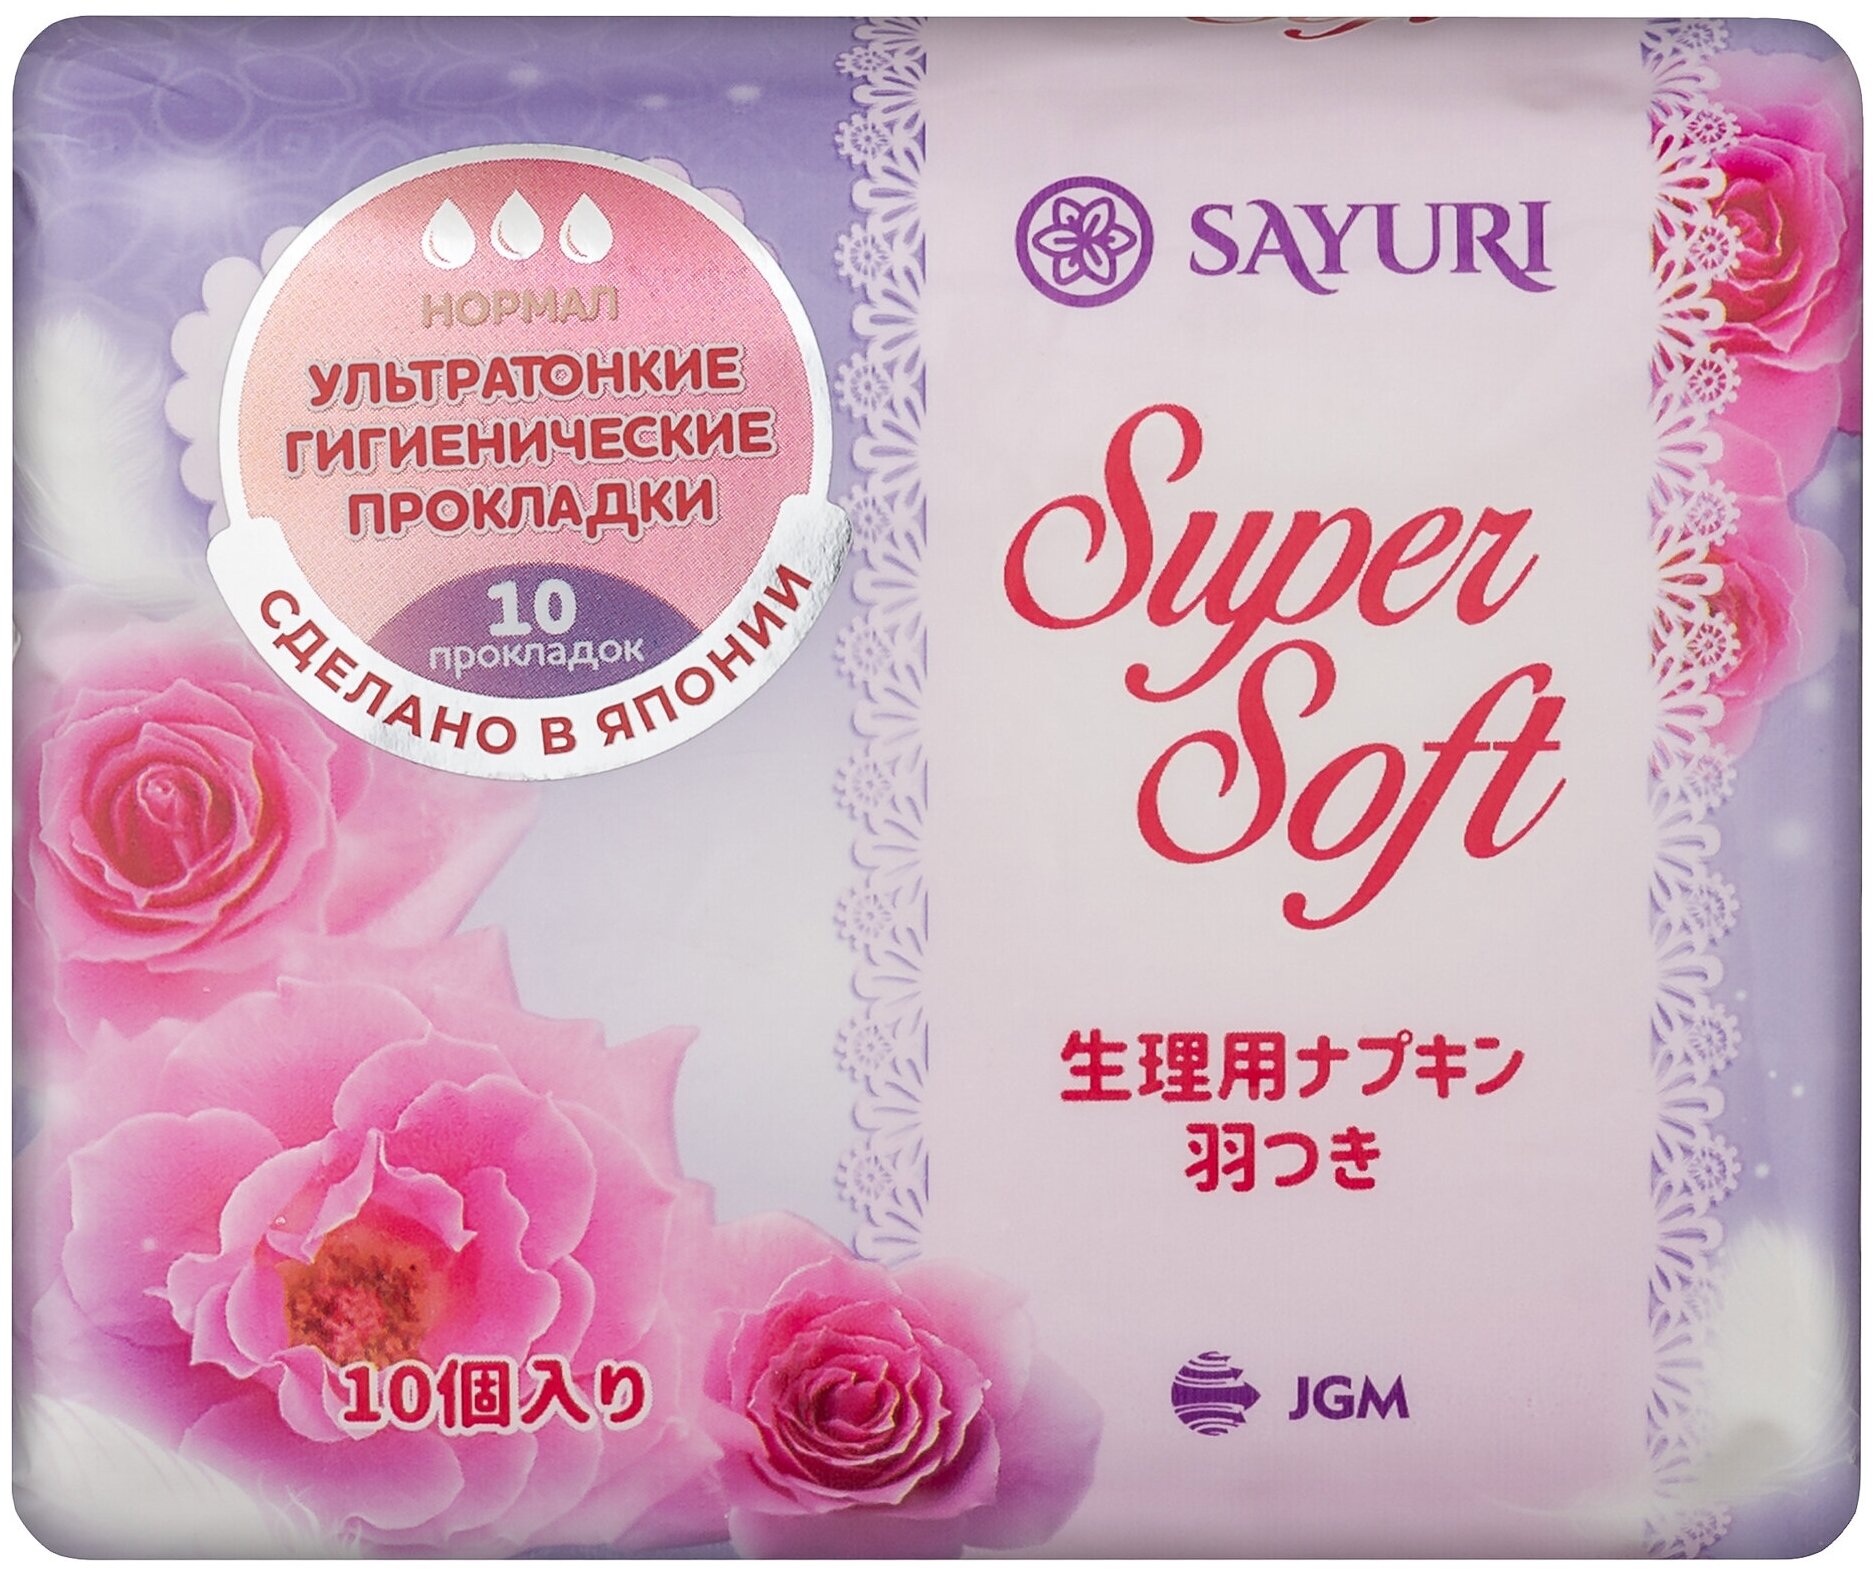 Прокладки Sayuri Super Soft, нормал, 24 см, 10 шт